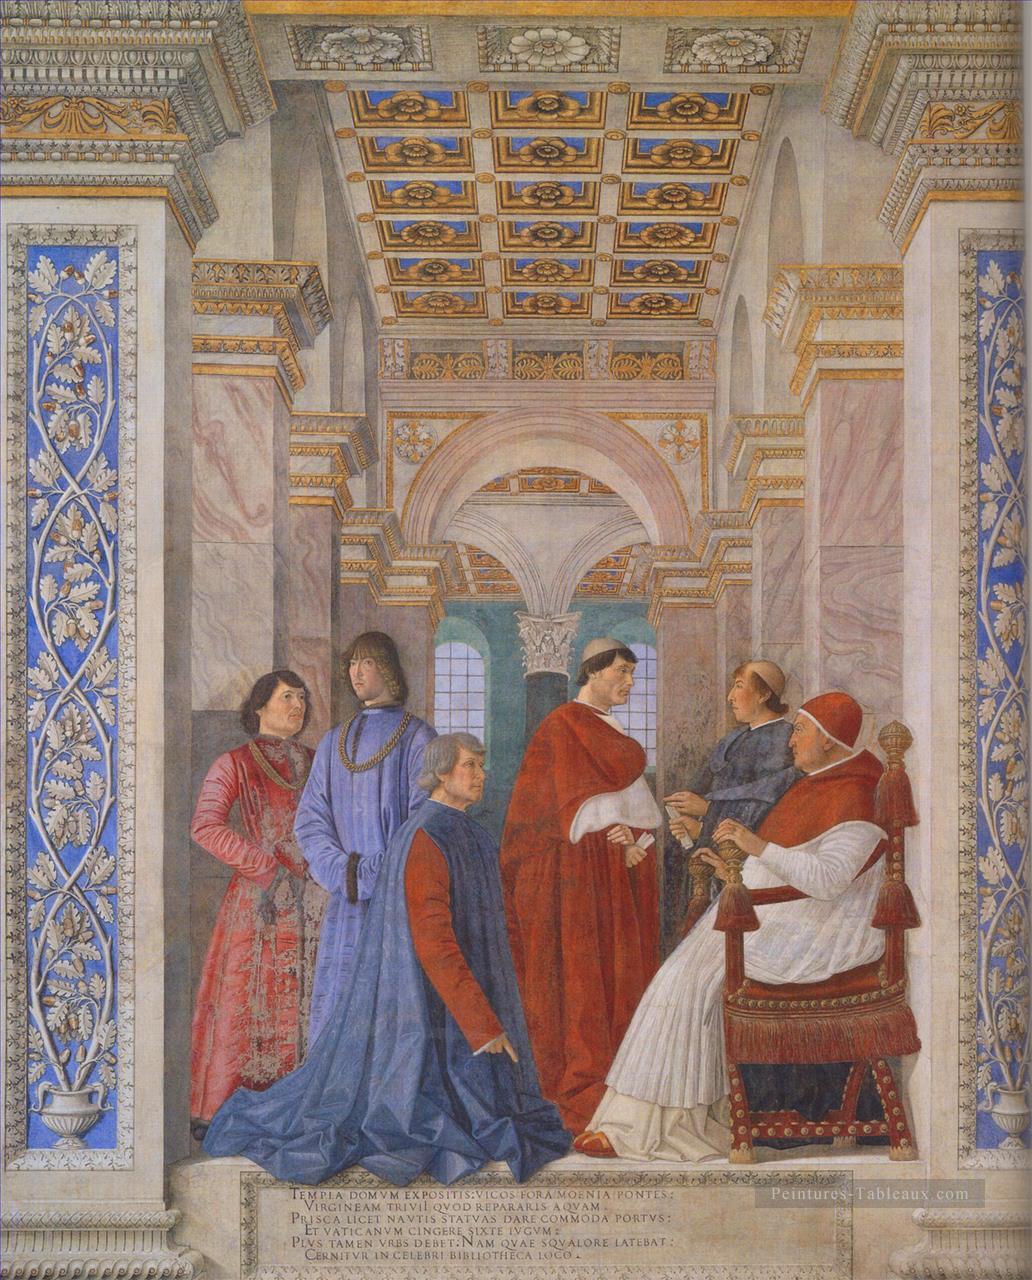 La famille de Ludovico Gonzaga Renaissance peintre Andrea Mantegna Peintures à l'huile